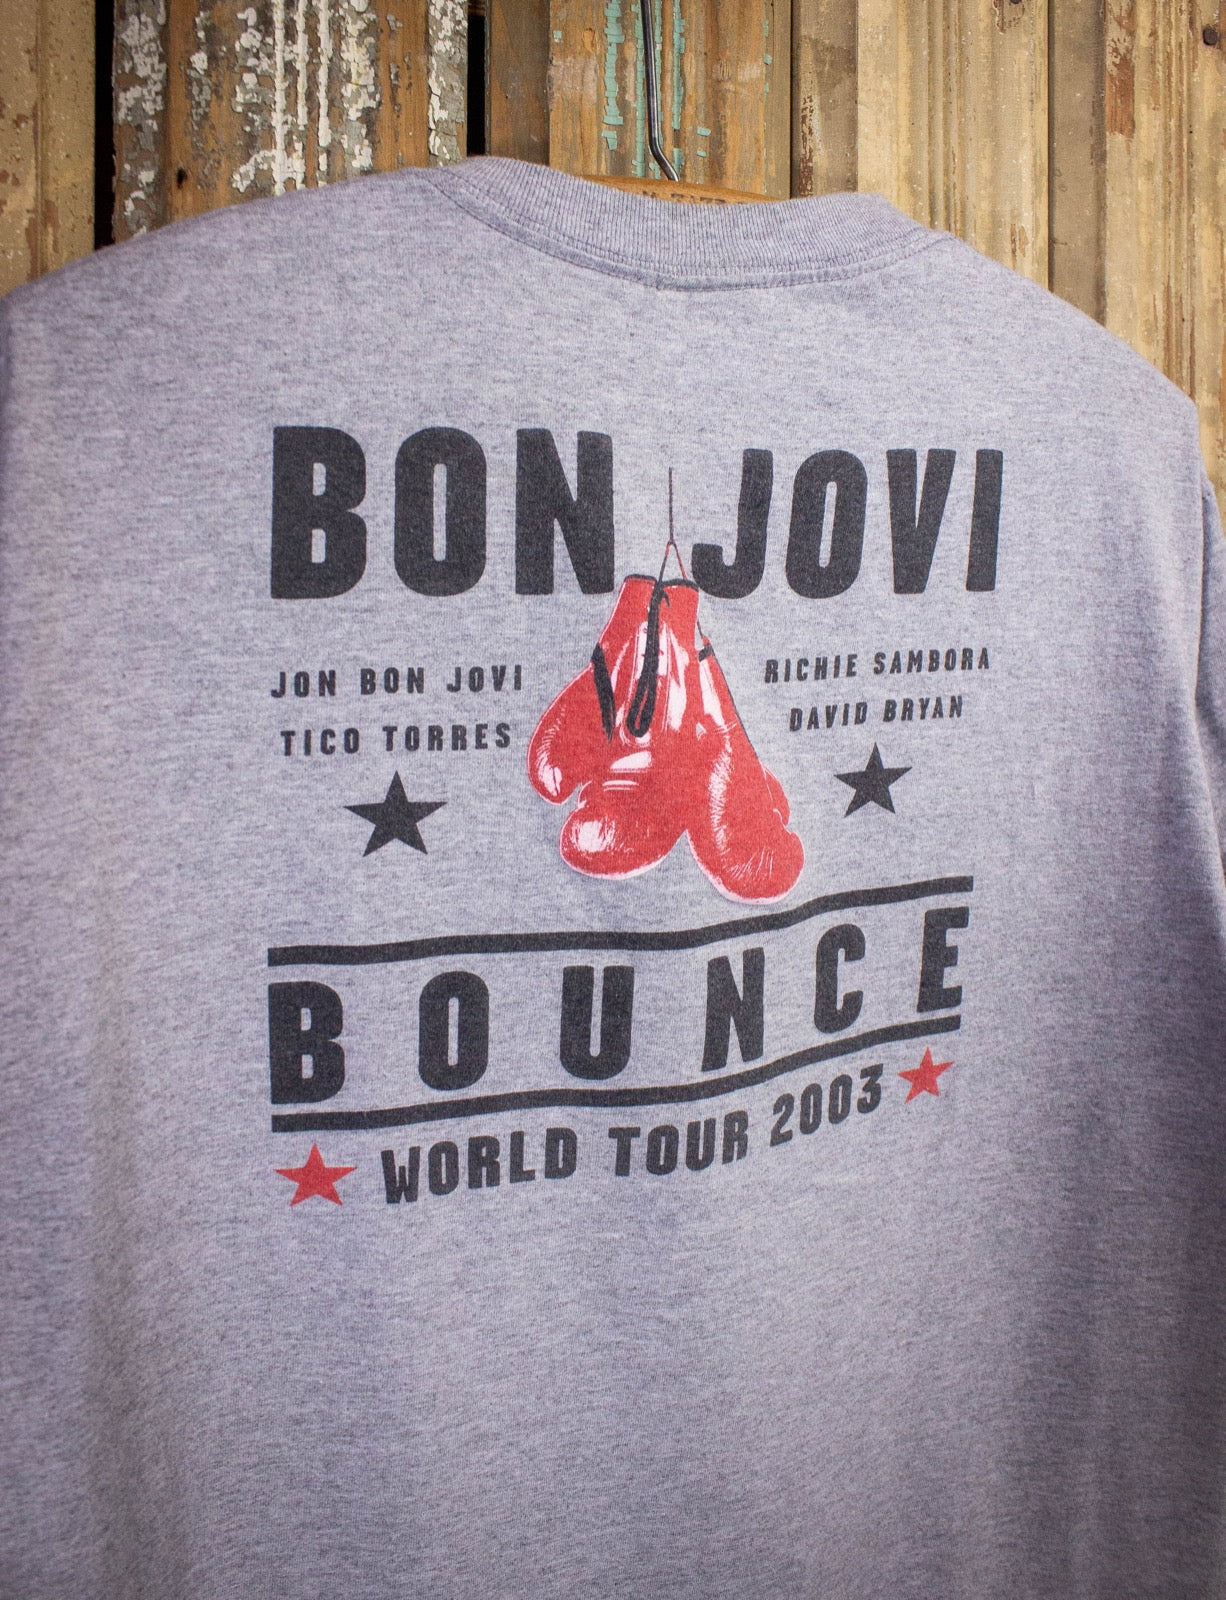 Vintage Bon Jovi The Bounce Tour Concert T Shirt 2003 Gray Large